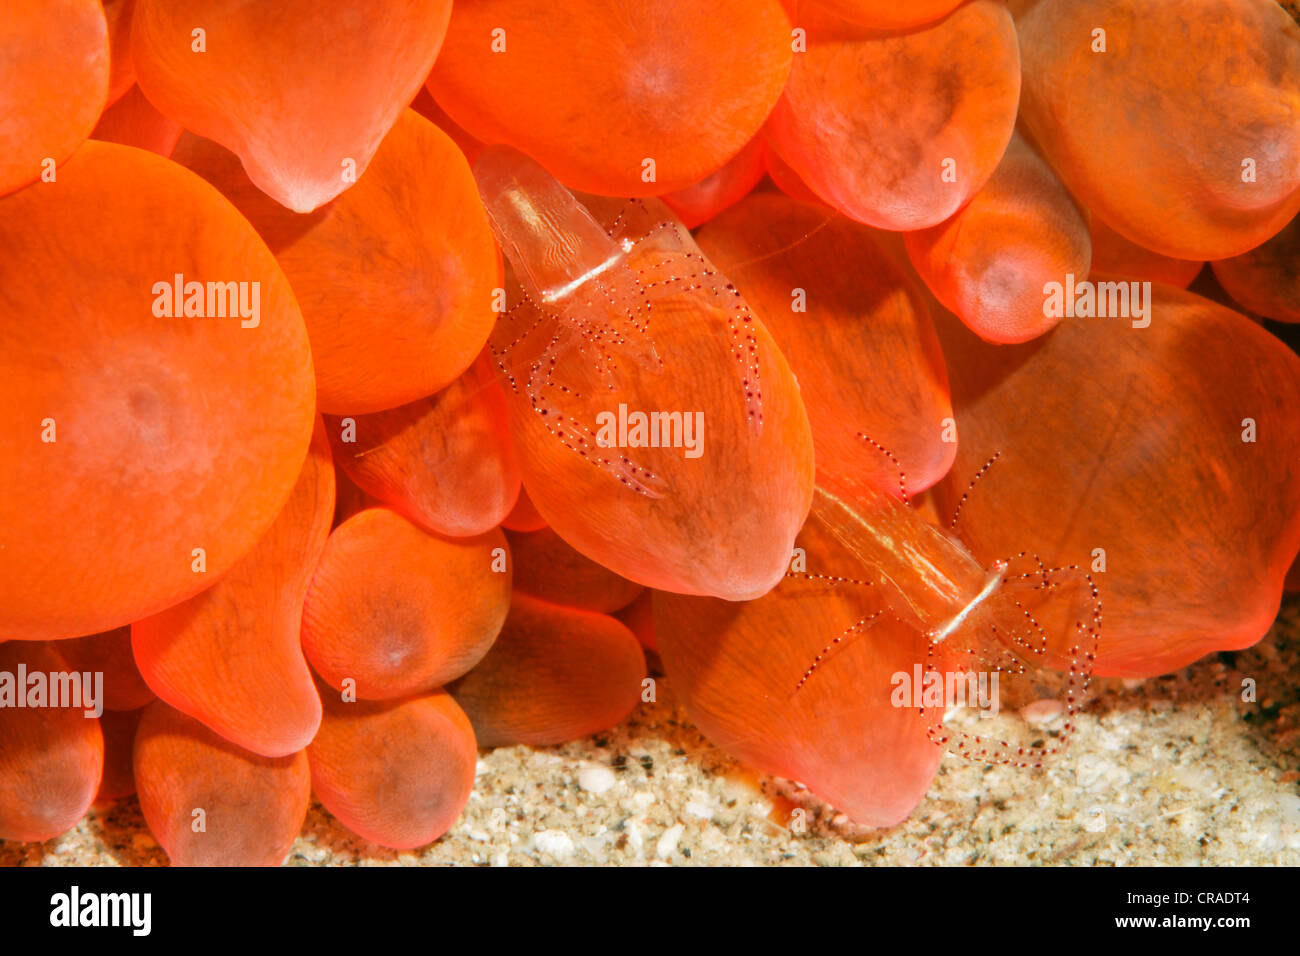 Paire de crevettes Anémone (Periclimenes ornatus) en rouge anémone de mer, Royaume hachémite de Jordanie, JK, Mer Rouge, de l'Asie occidentale Banque D'Images